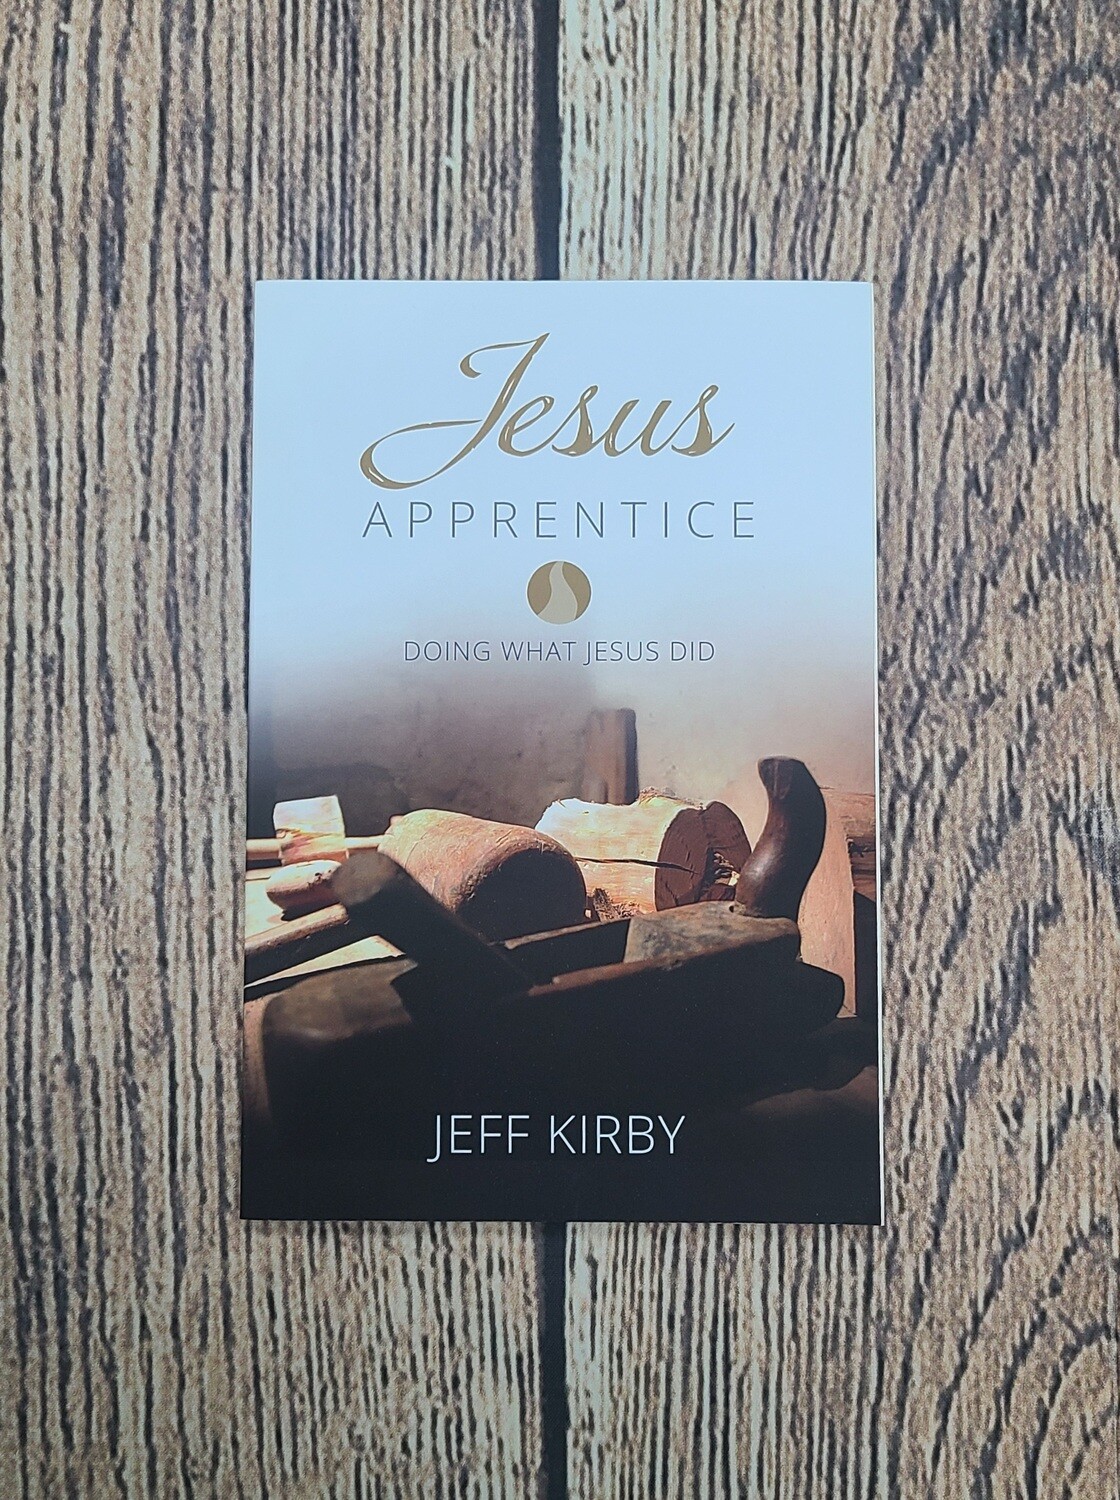 Jesus Apprentice by Jeff Kirby